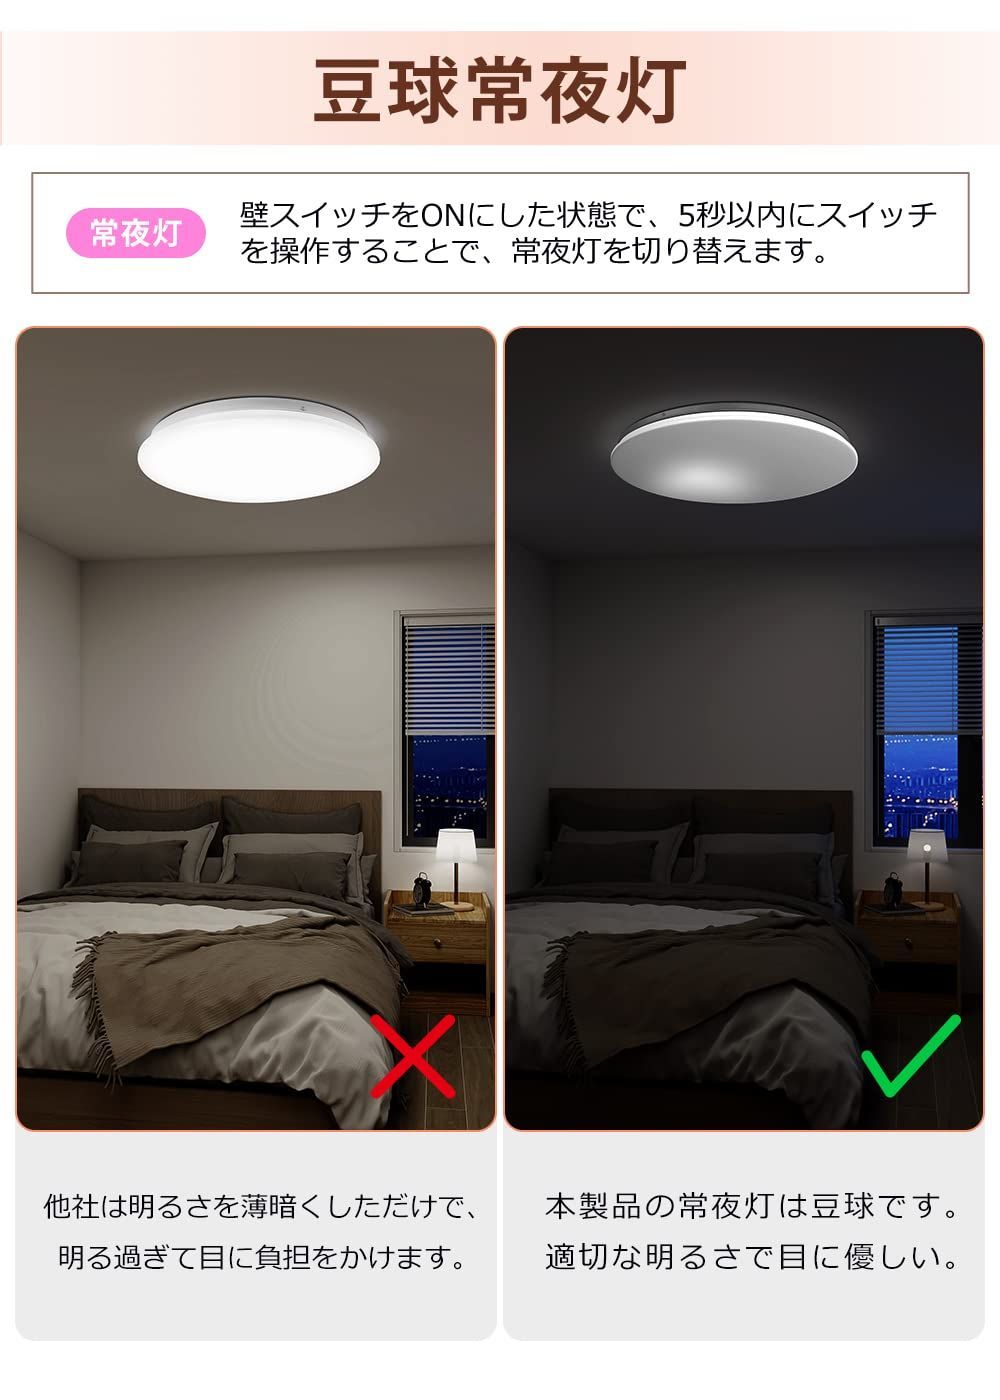 LEDライト 照明 リモコン タイマー 寝室 授乳ライト コードレス